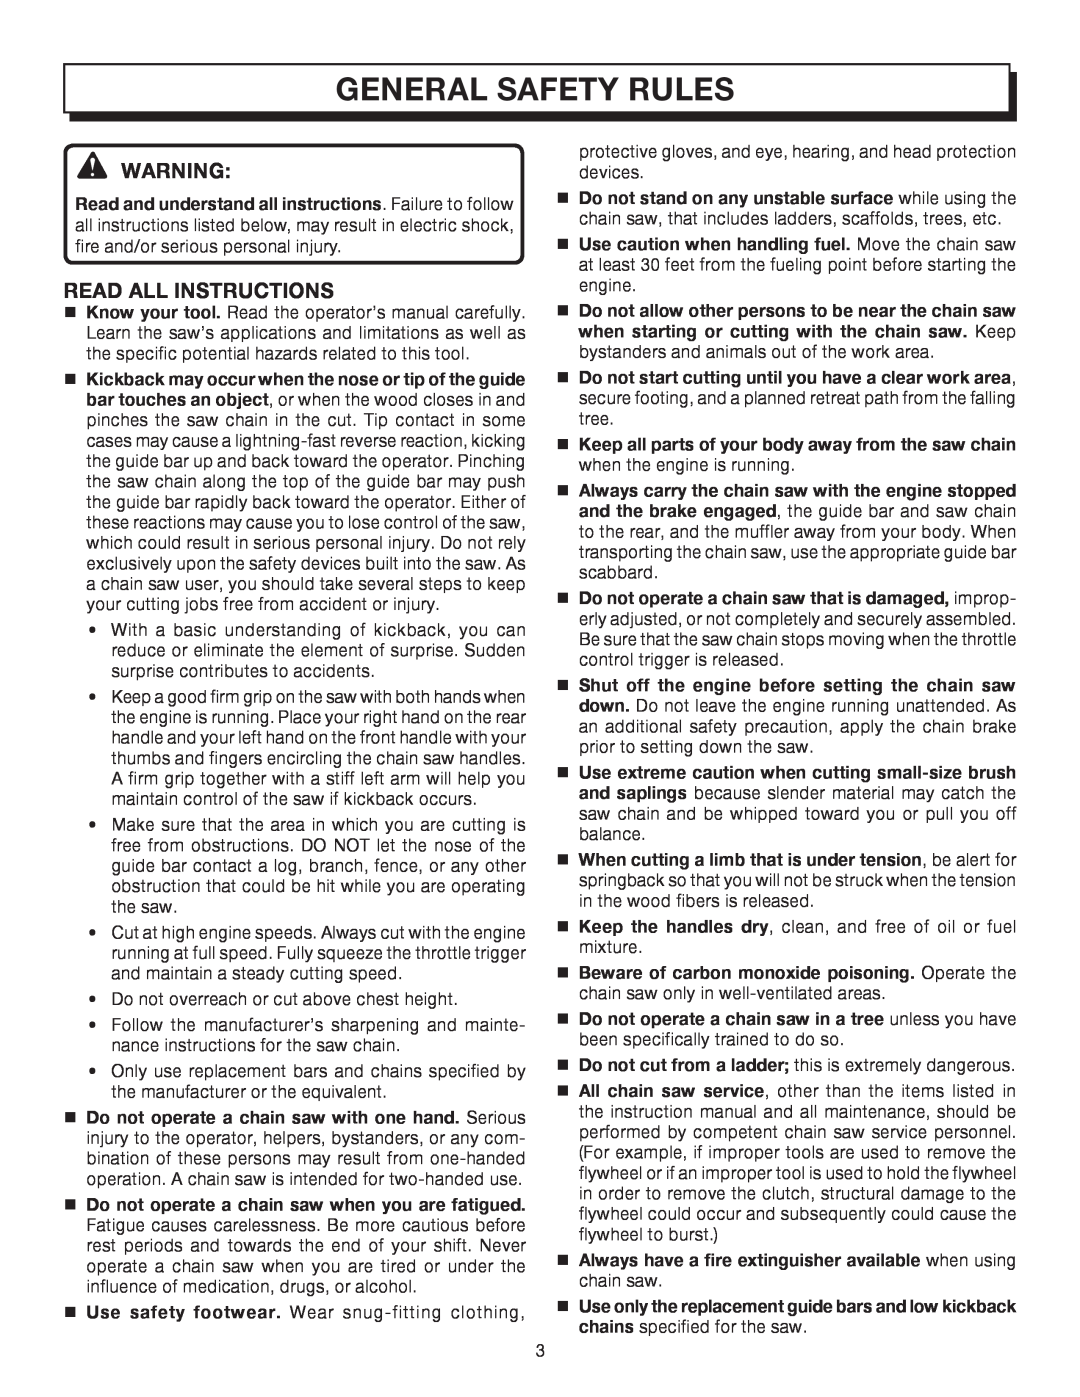 Homelite UT10032, UT10512, UT10012 manual General Safety Rules, Read All Instructions 